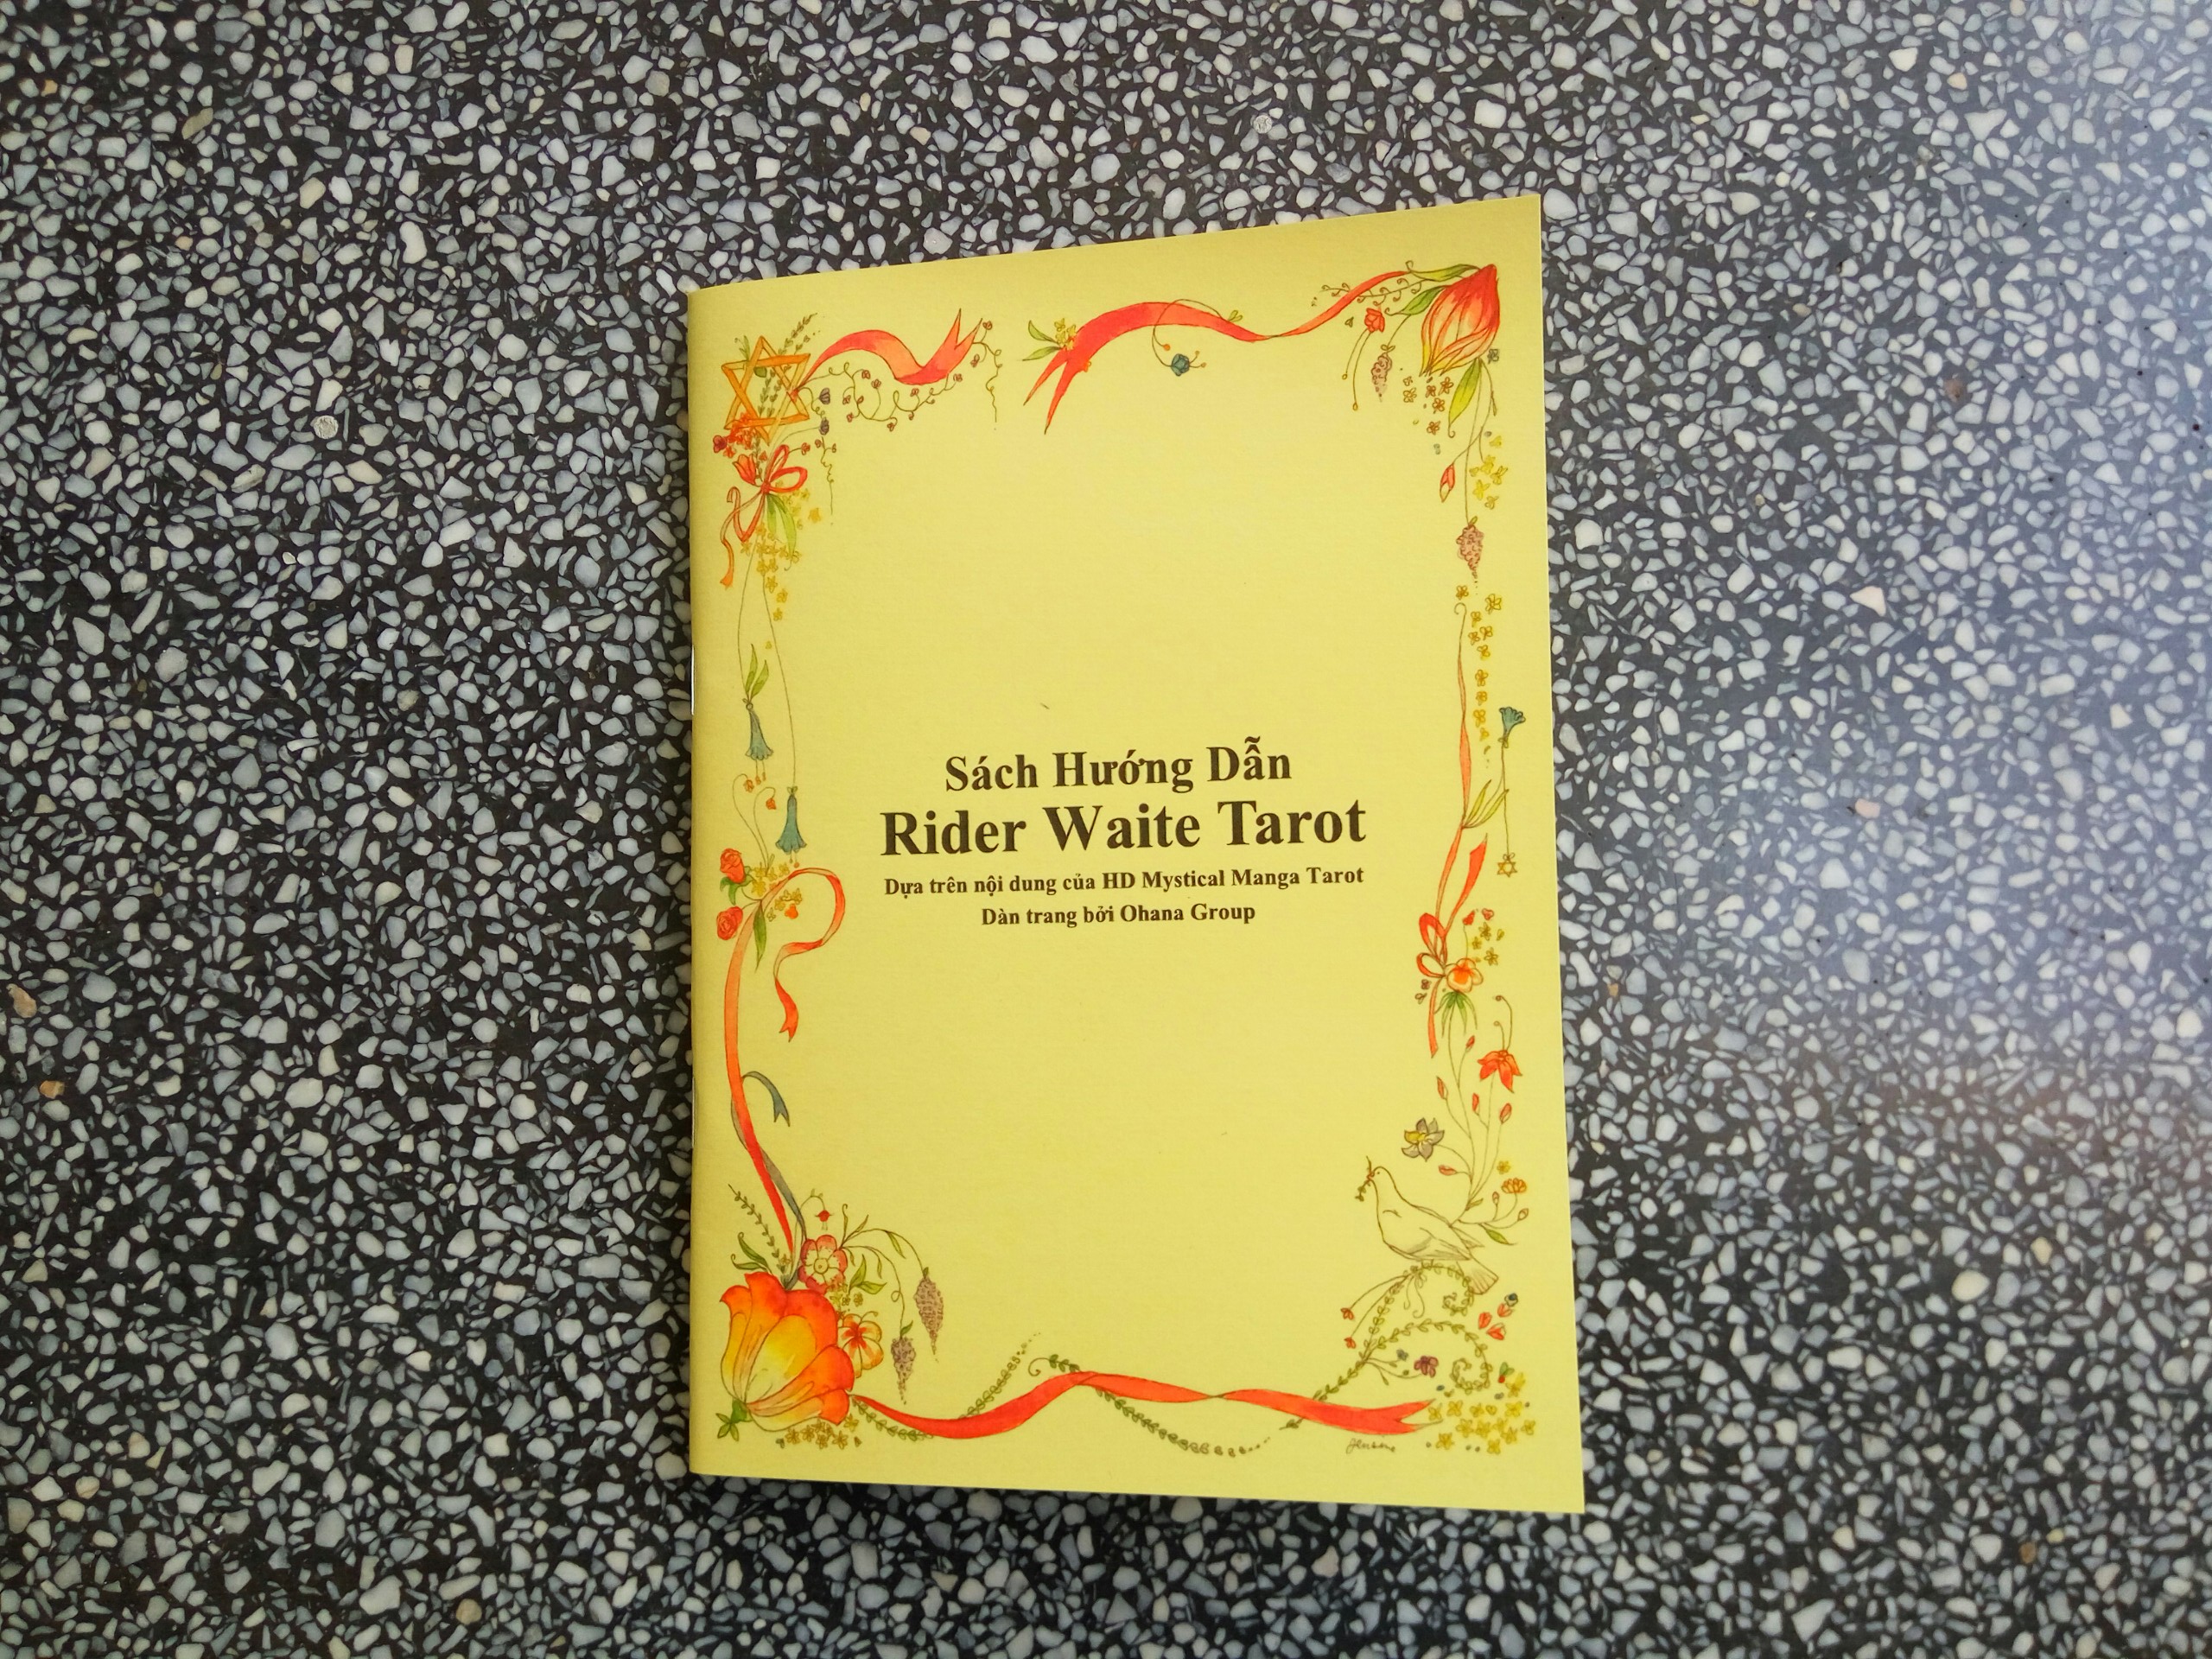 Hướng dẫn bài Tarot Rider Waite tiếng Việt nội dung Mystical Manga